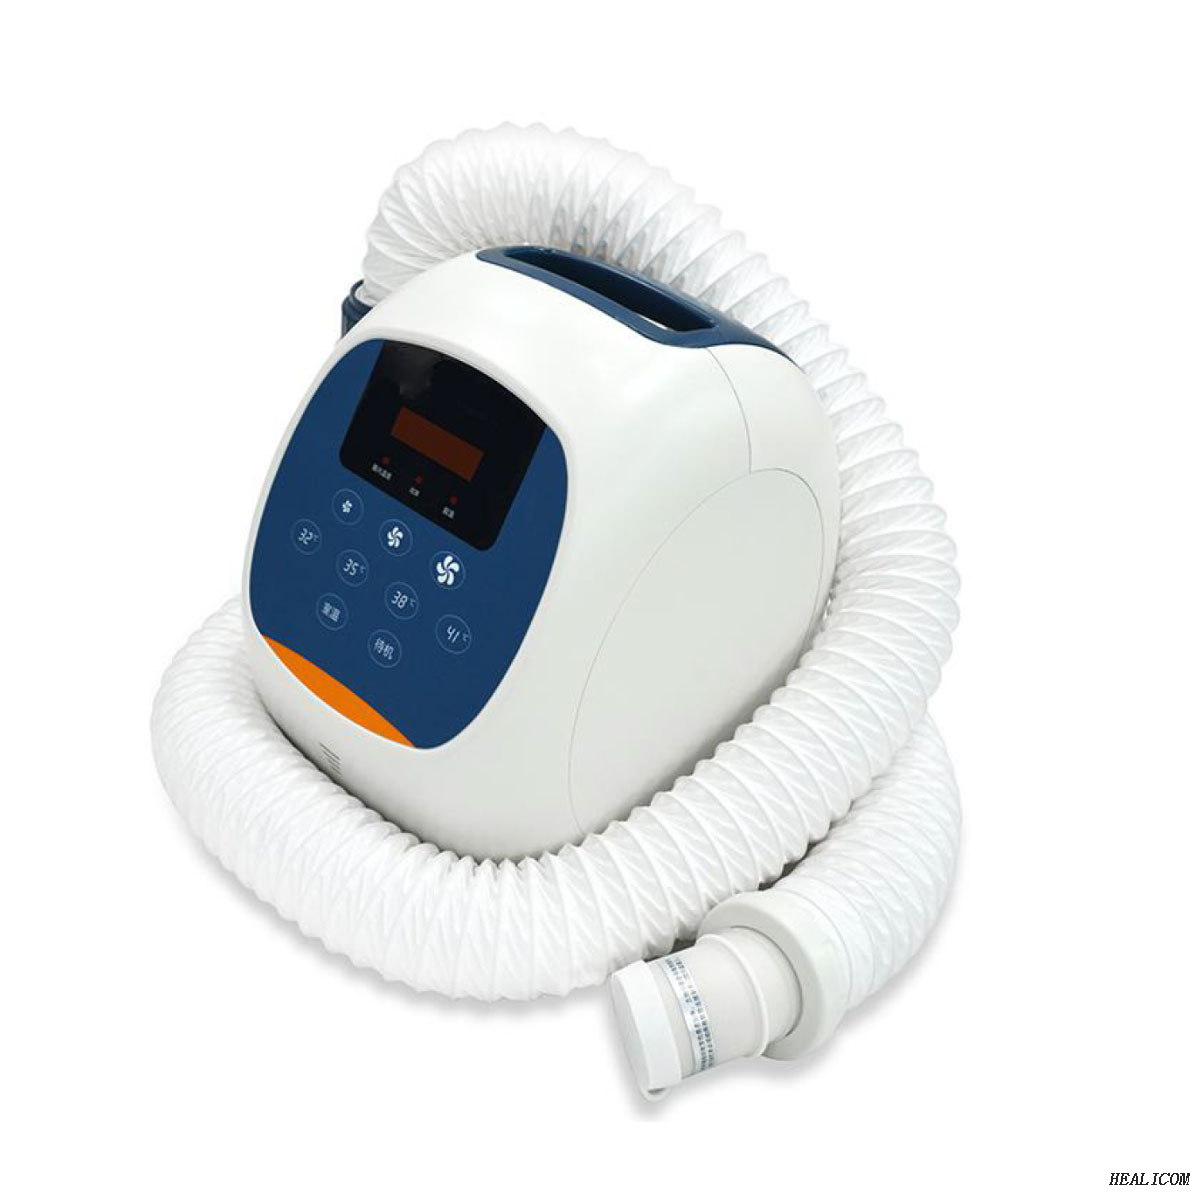 Manta de calentamiento del paciente de las mantas de calentamiento del paciente de la calefacción médica HC-200